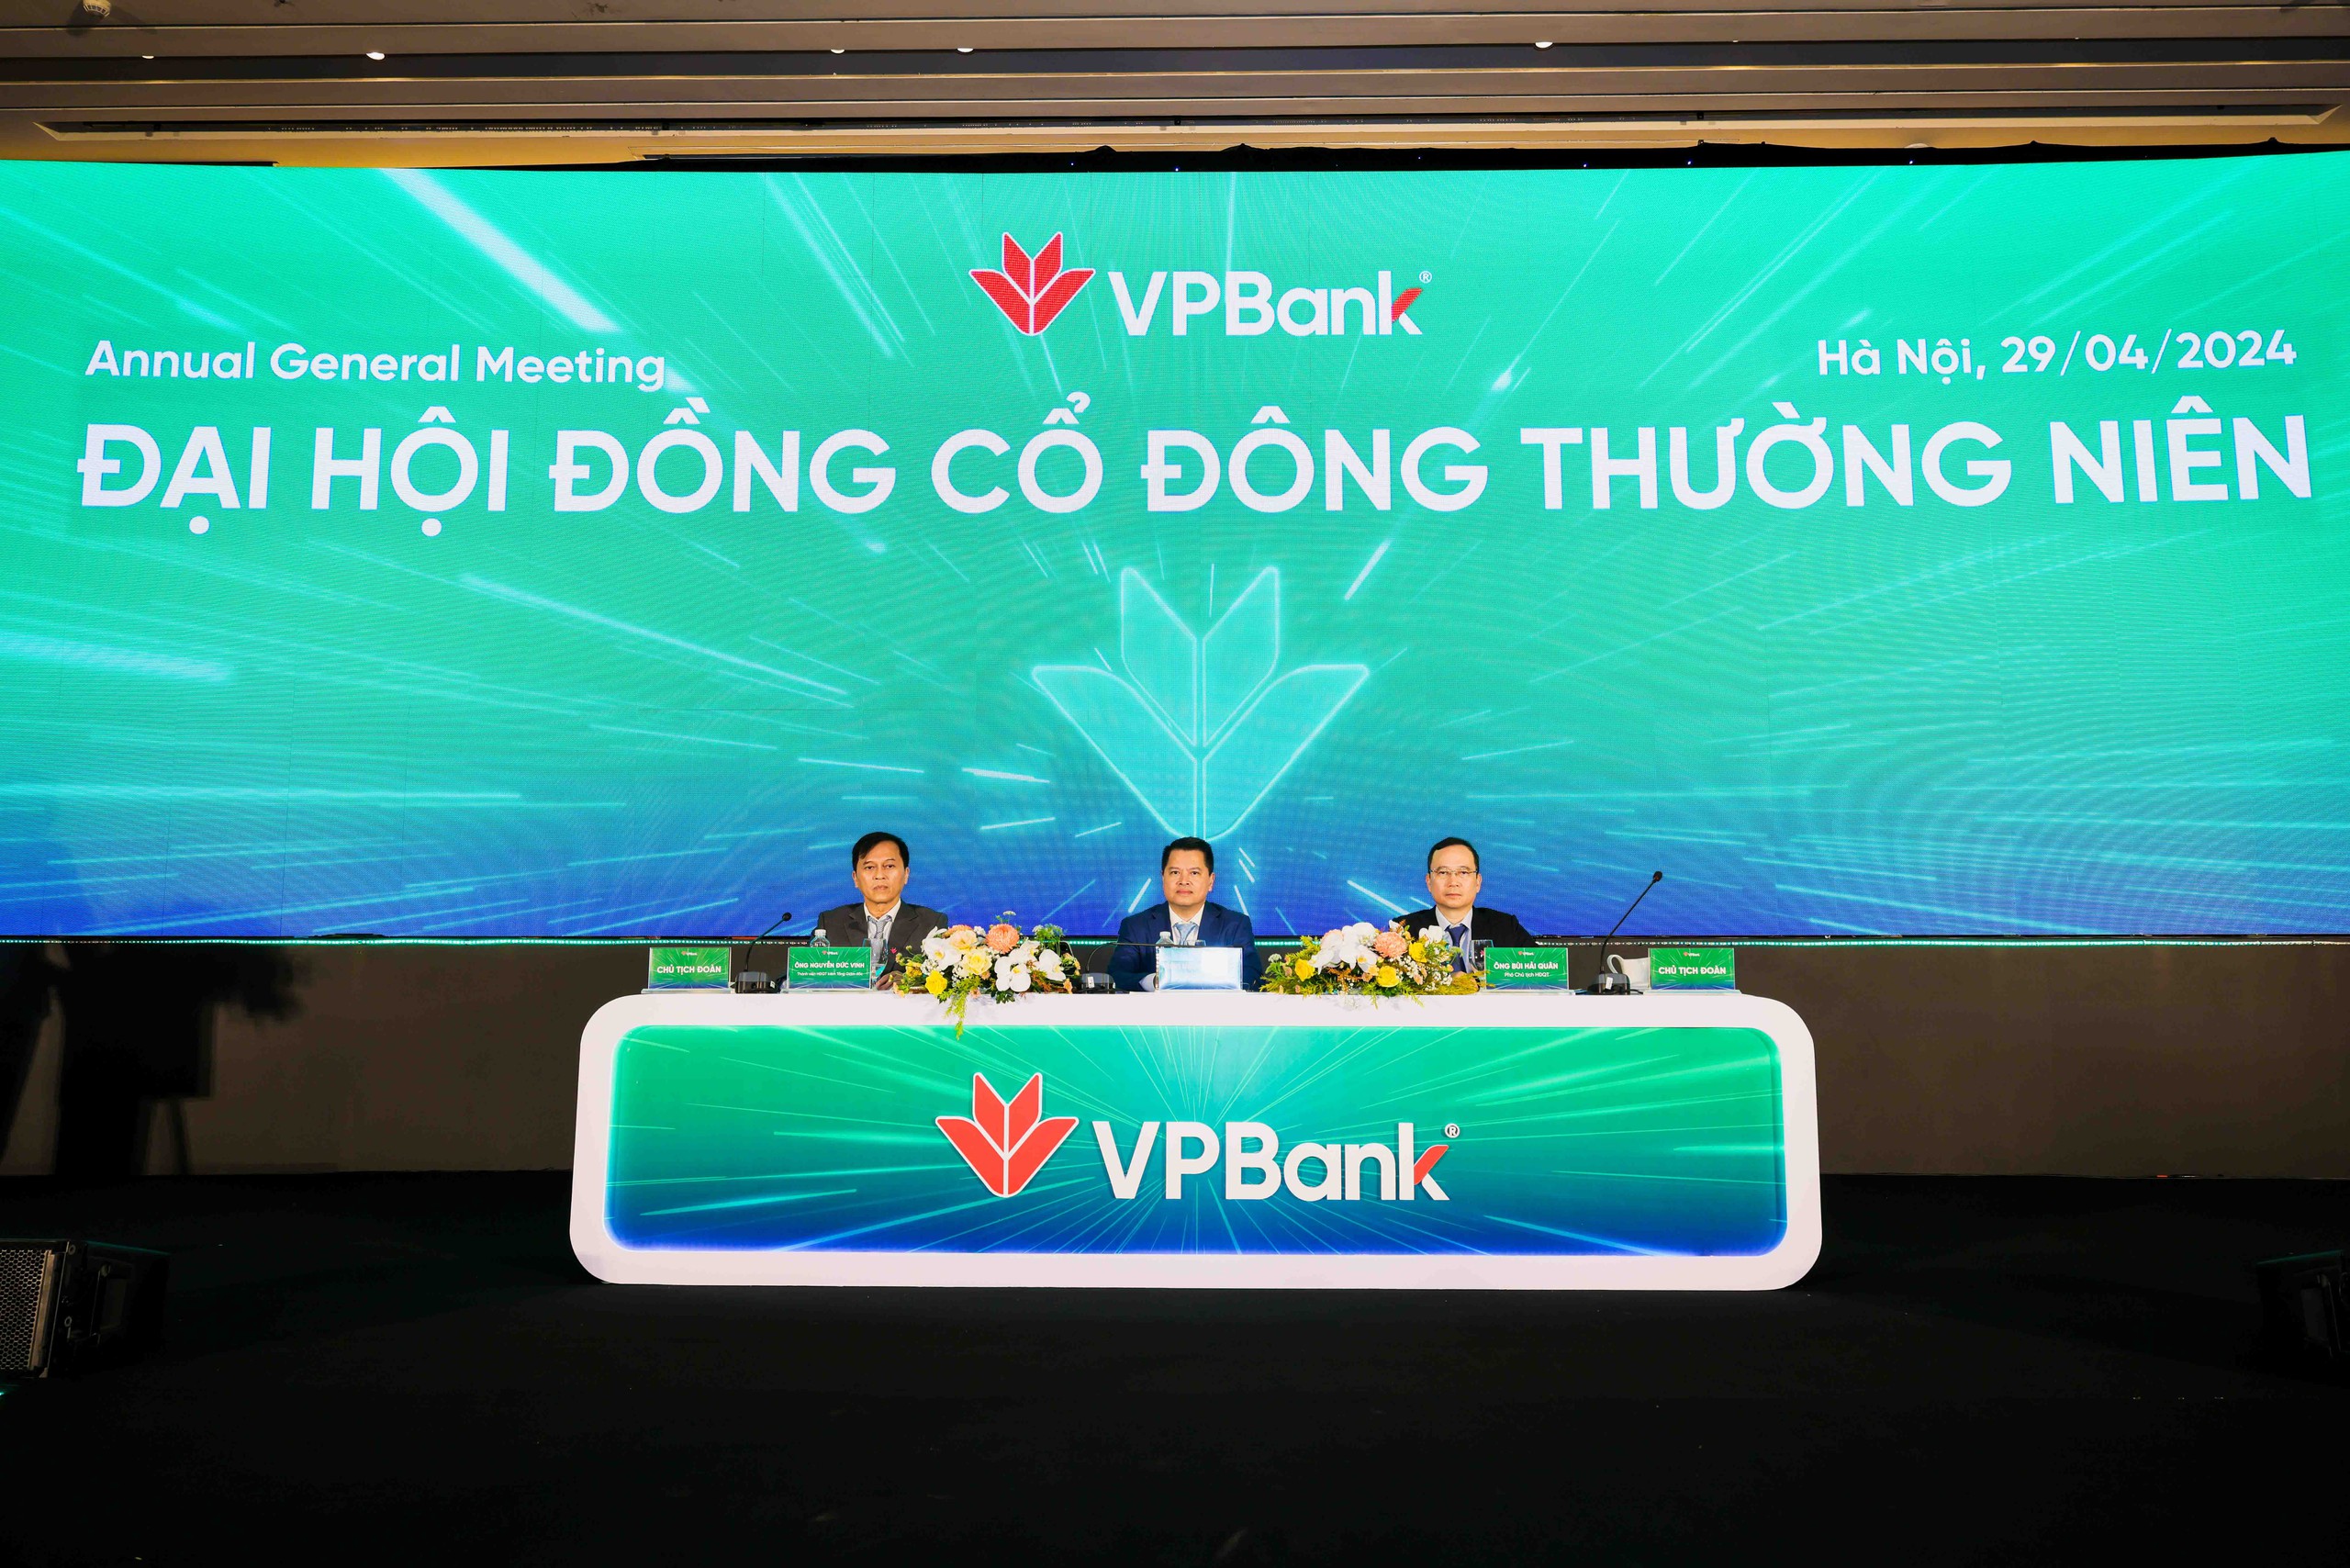 Chủ tịch VPBank: Góc độ tài chính các ngân hàng không thiết tha 